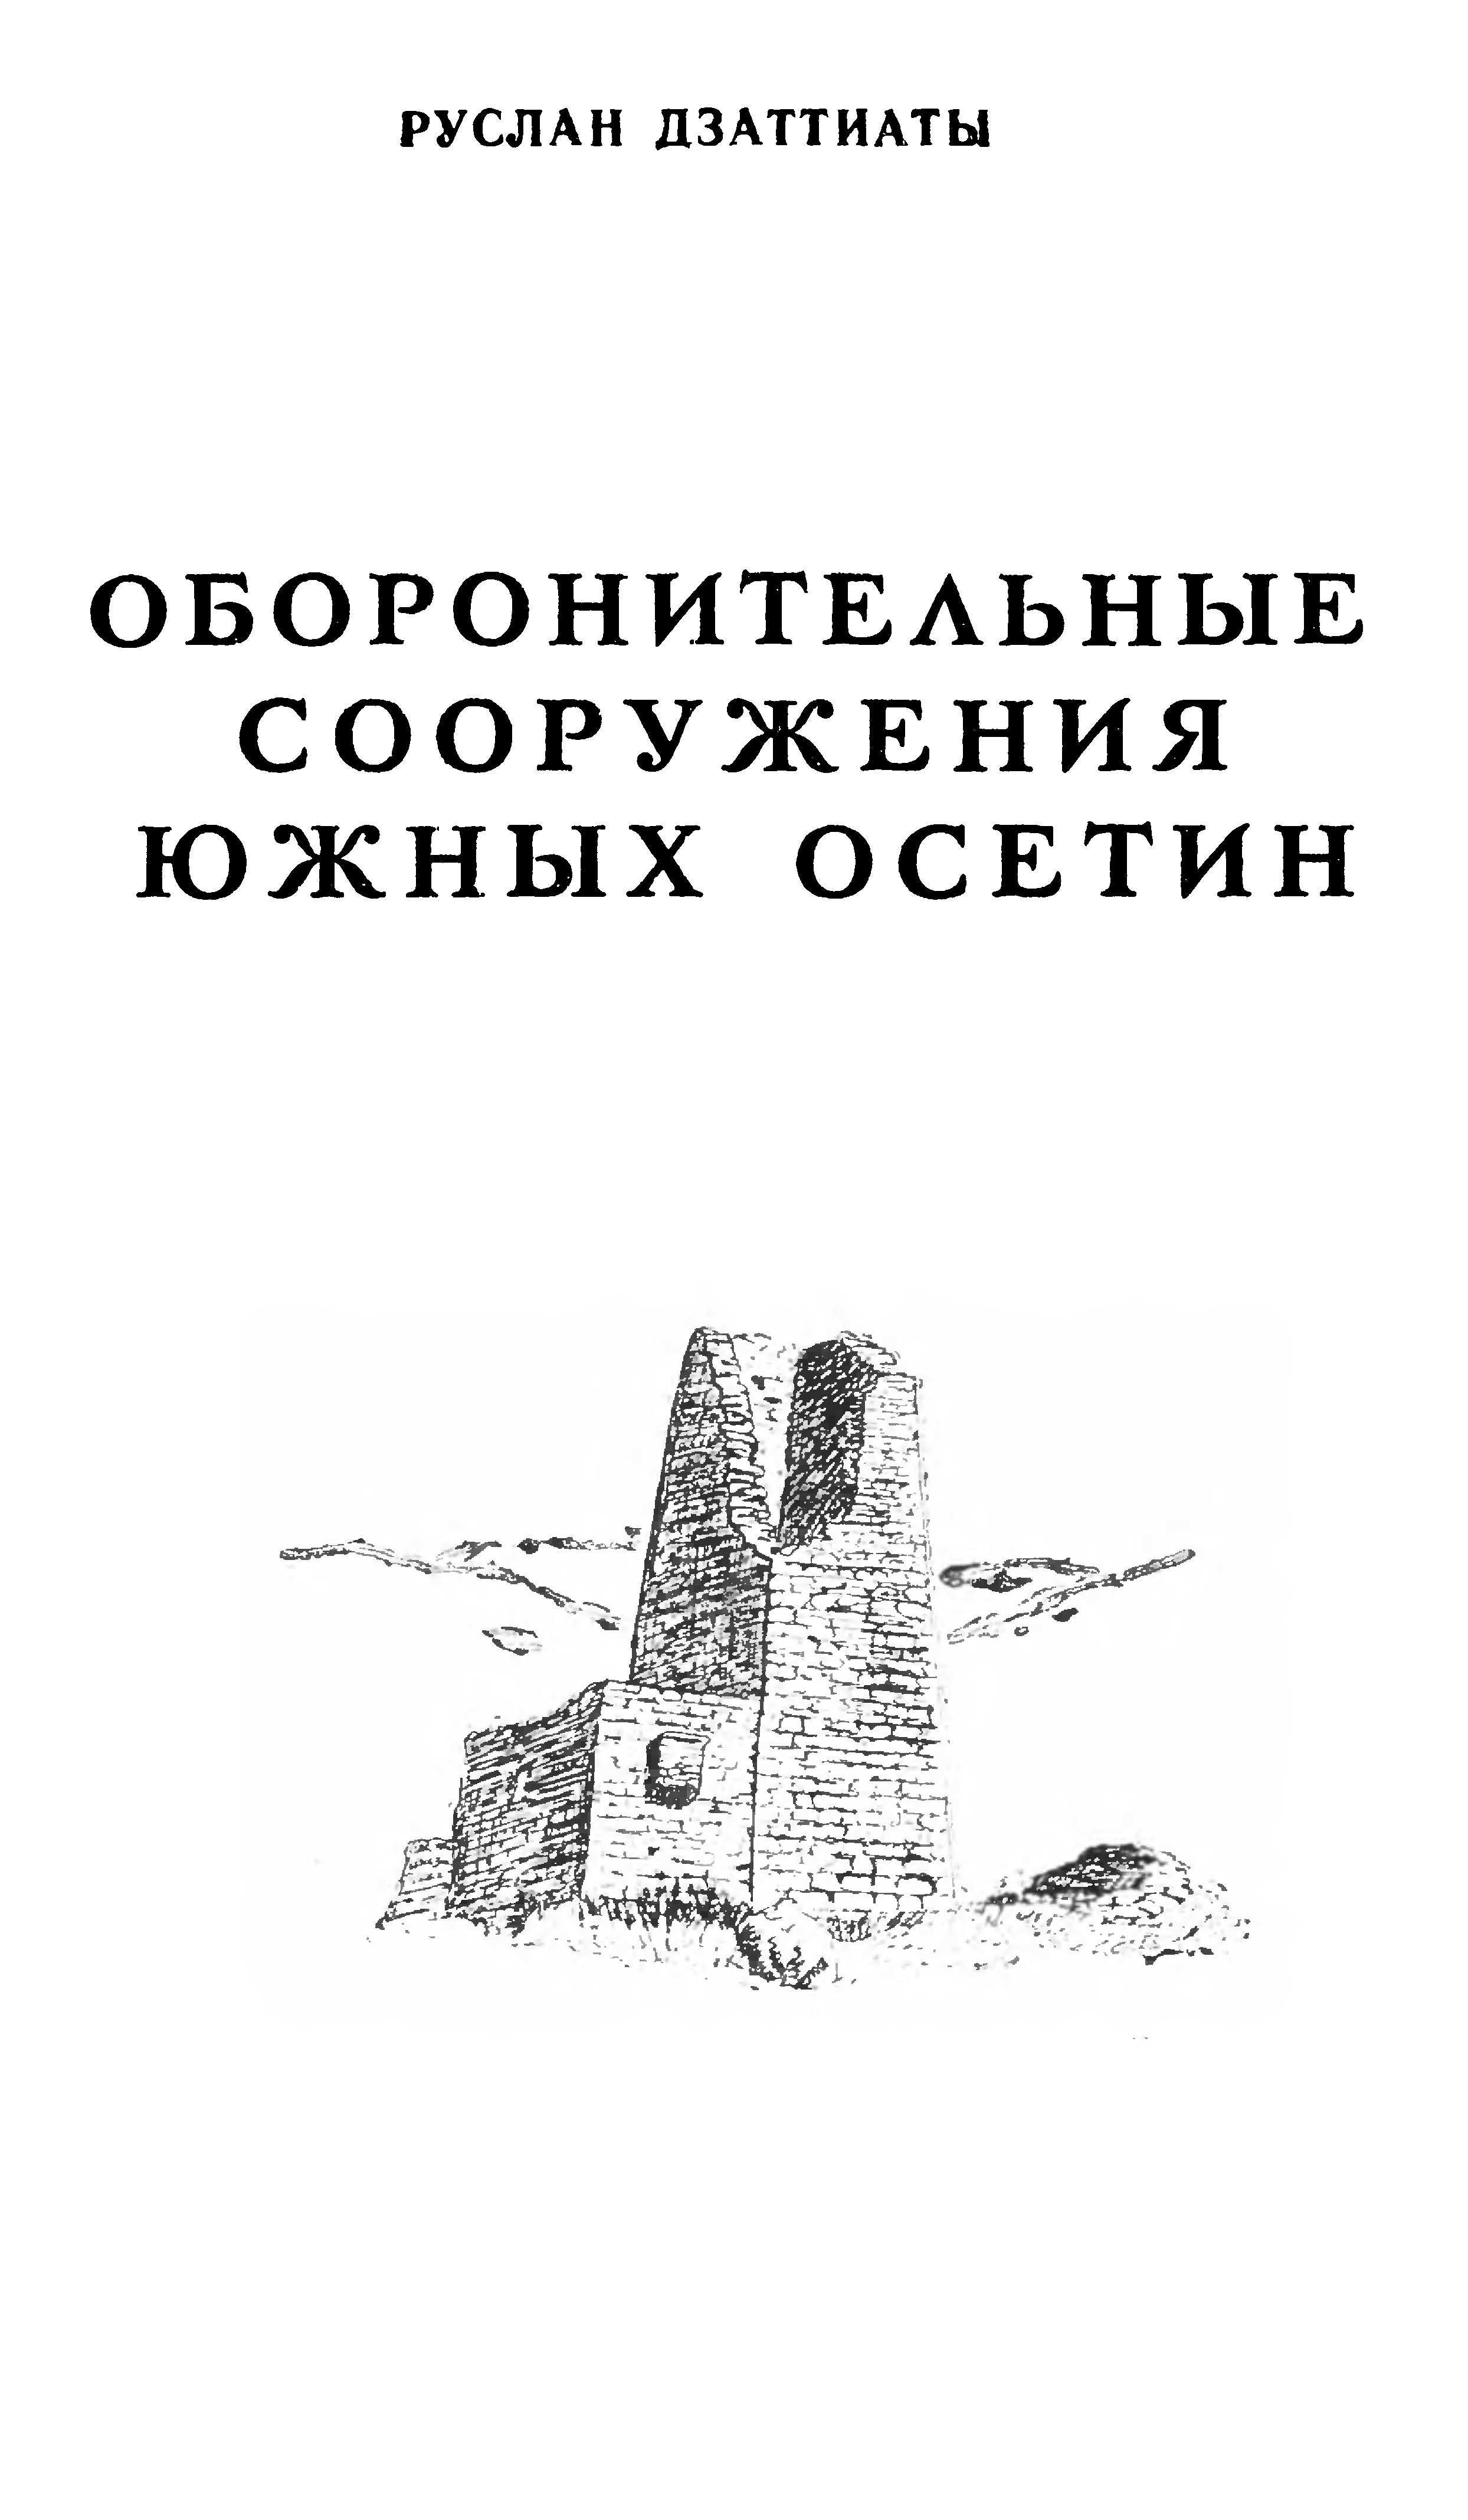 Оборонительные сооружения южных осетин / Руслан Дзаттиаты. — Цхинвали : Издательство «Ирыстон», 1983